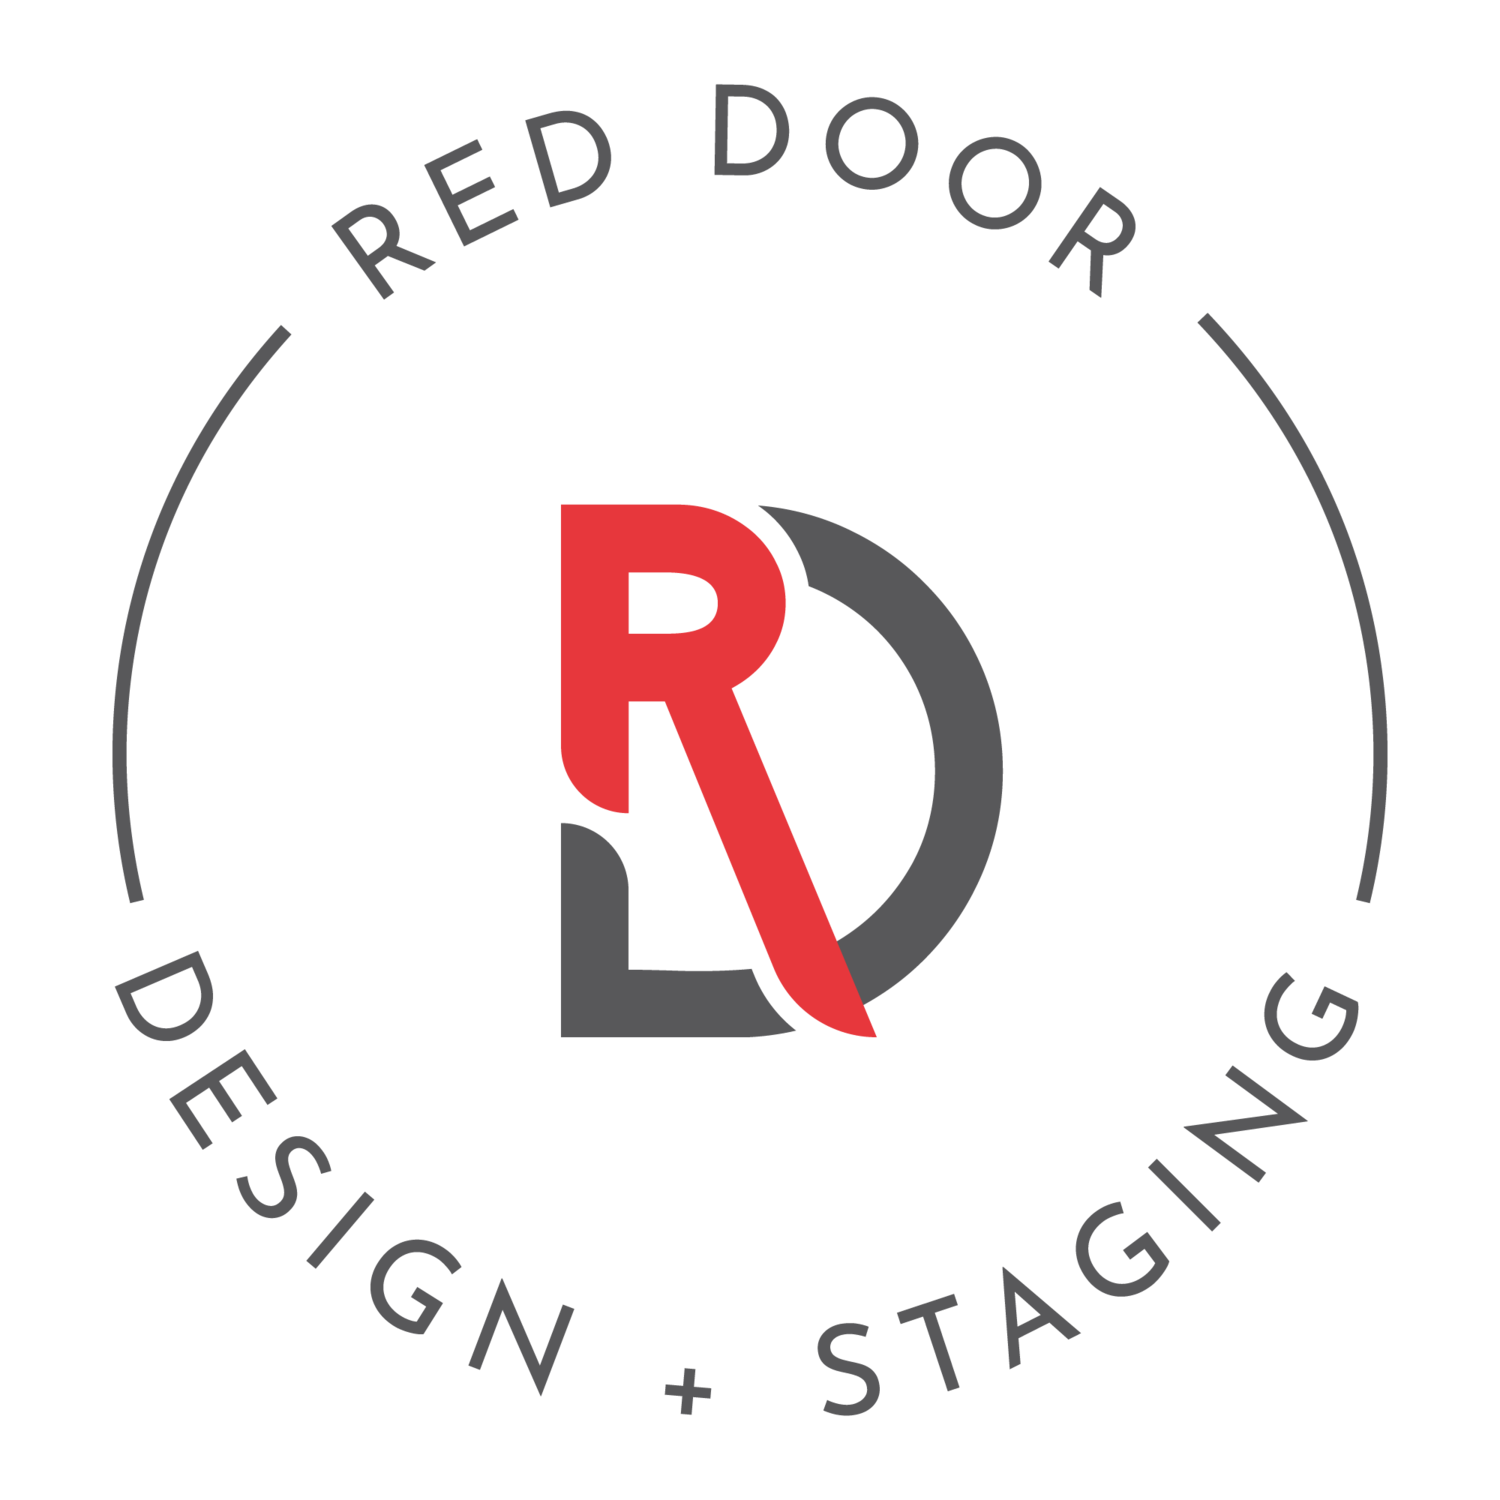 Red Door Design + Staging